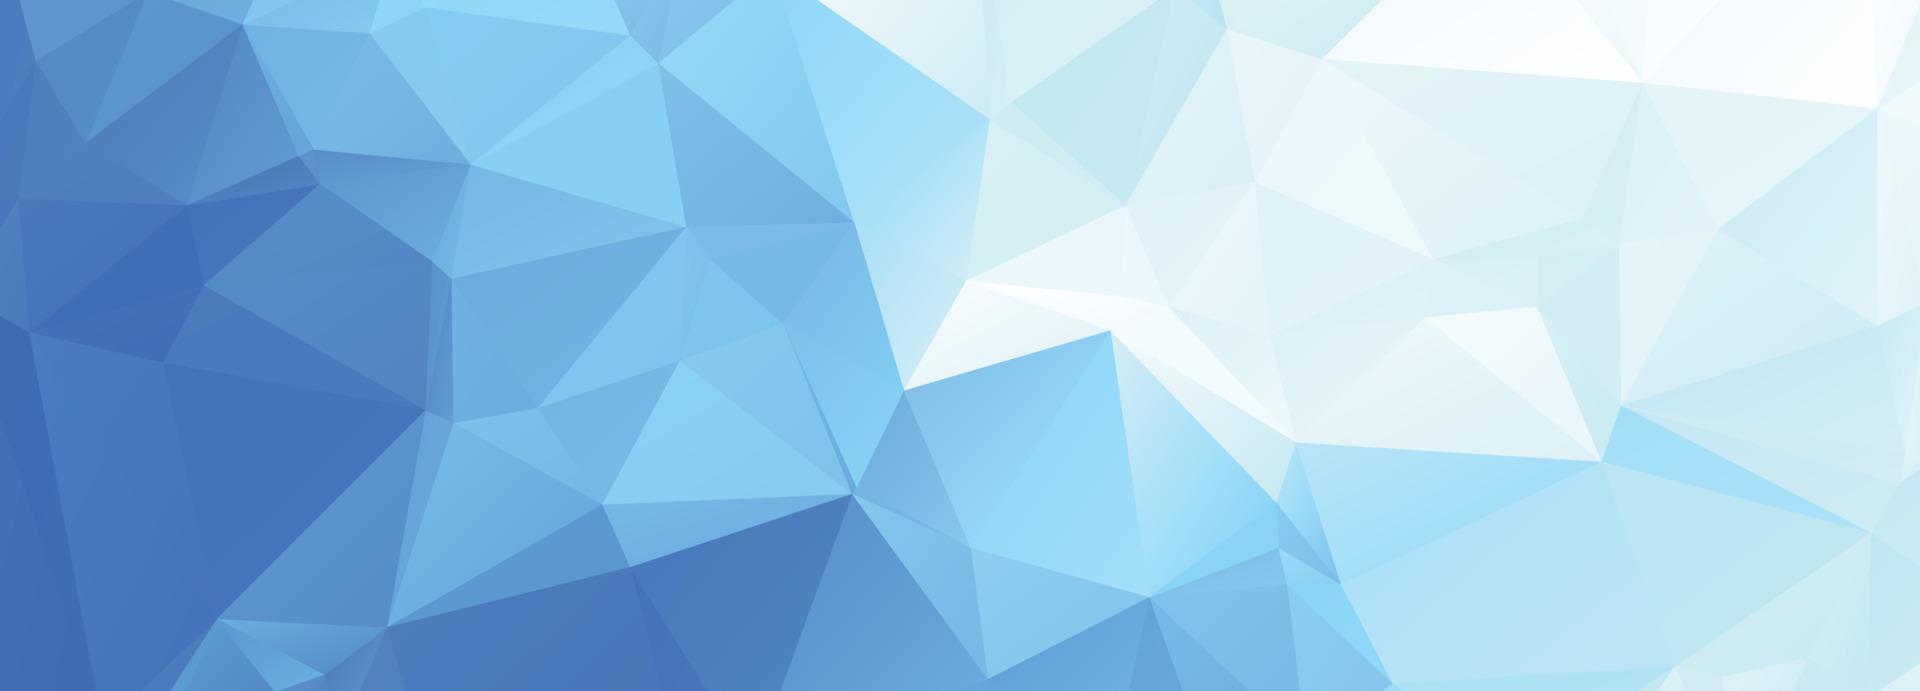 Modernes blaues Low-Poly-Dreieck formt Bannerhintergrund vektor